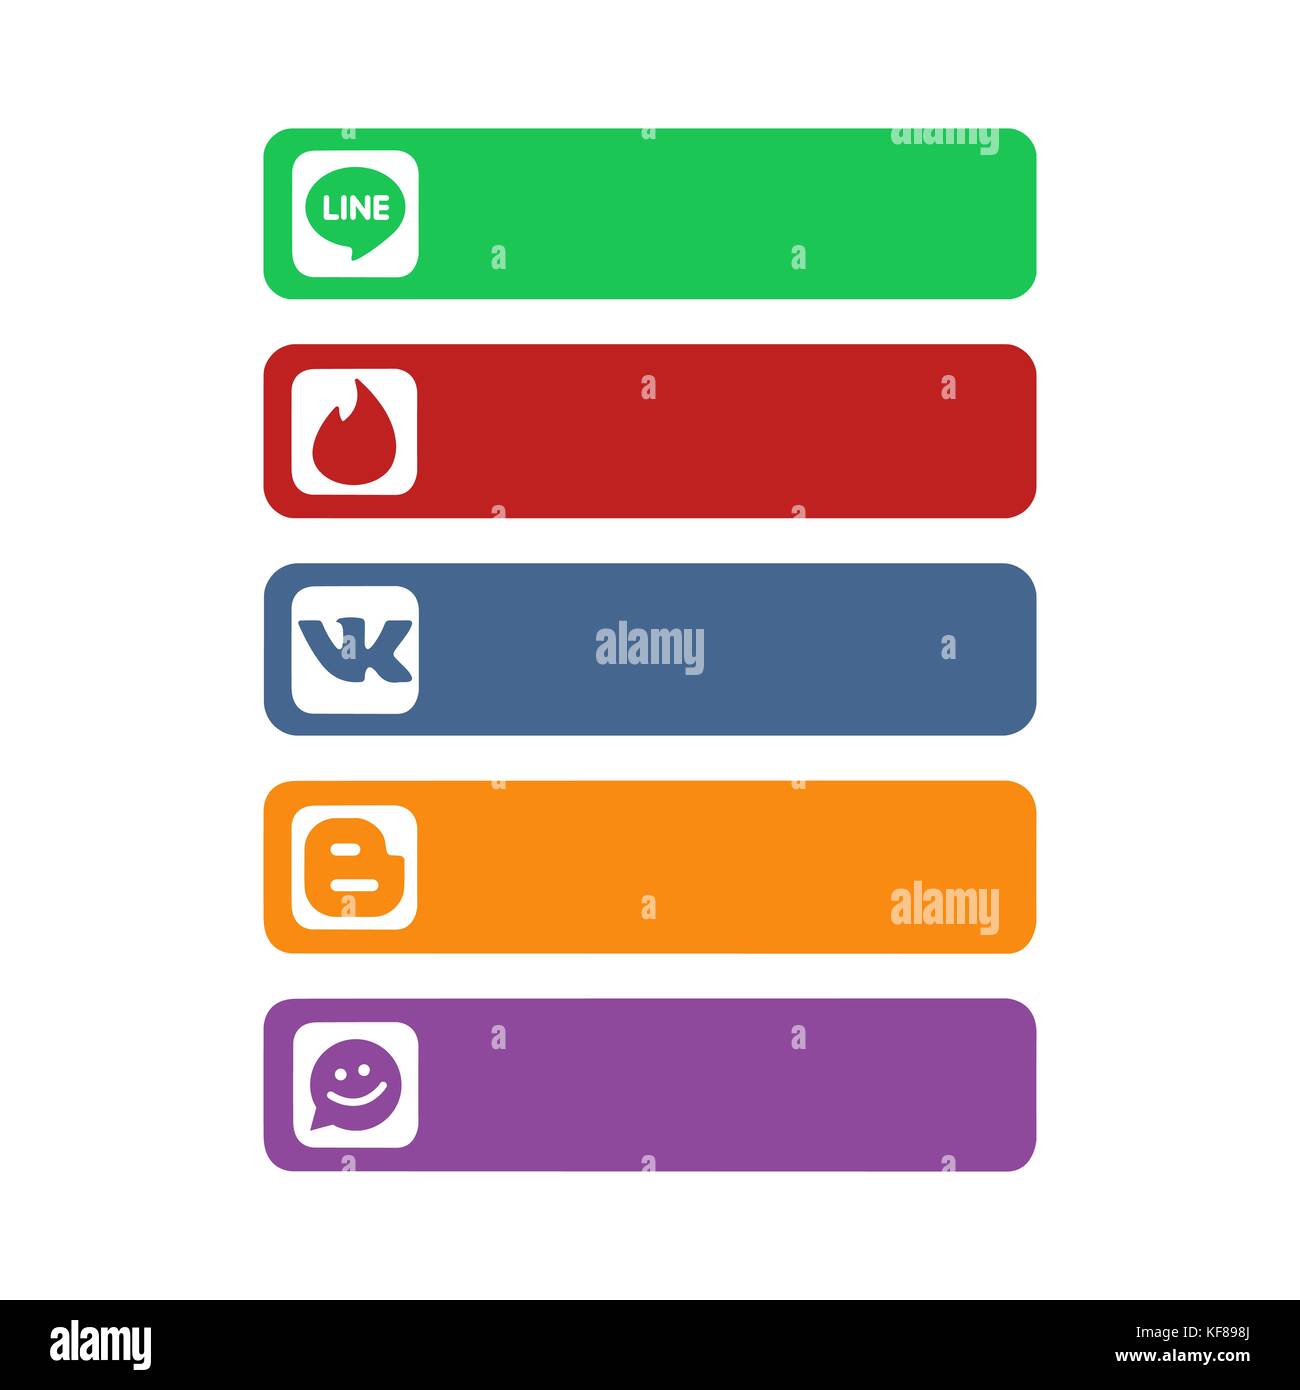 Collection de médias sociaux populaires logos imprimés sur du papier : ligne, l'amadou, me rencontrer et d'autres. Illustration de Vecteur